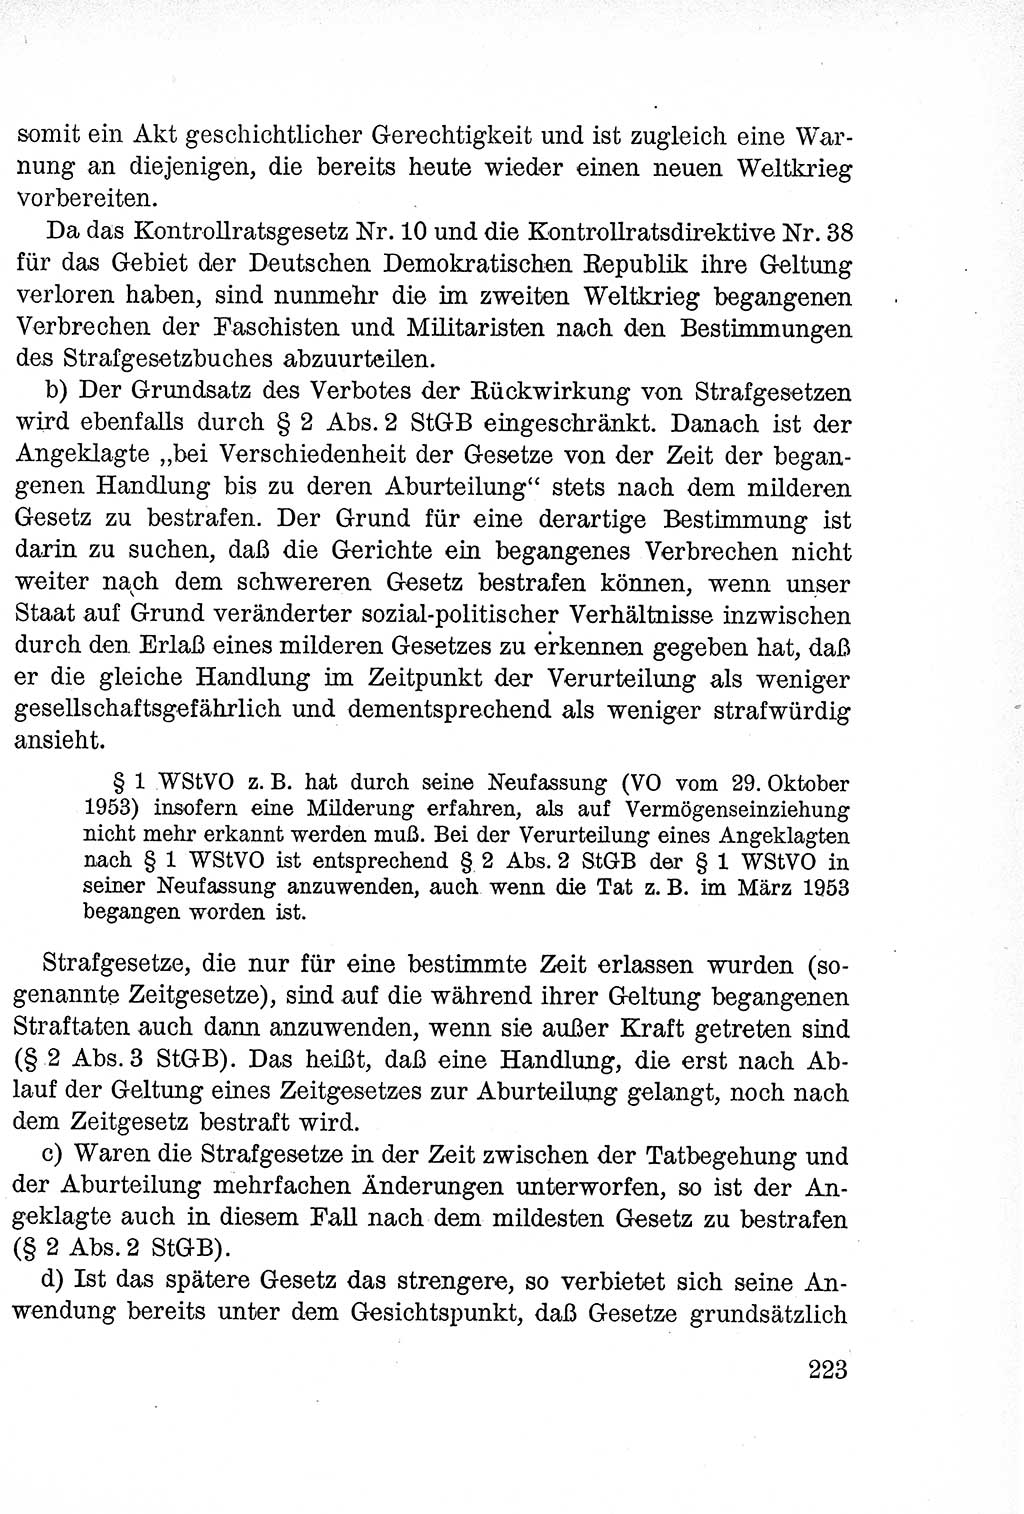 Lehrbuch des Strafrechts der Deutschen Demokratischen Republik (DDR), Allgemeiner Teil 1957, Seite 223 (Lb. Strafr. DDR AT 1957, S. 223)